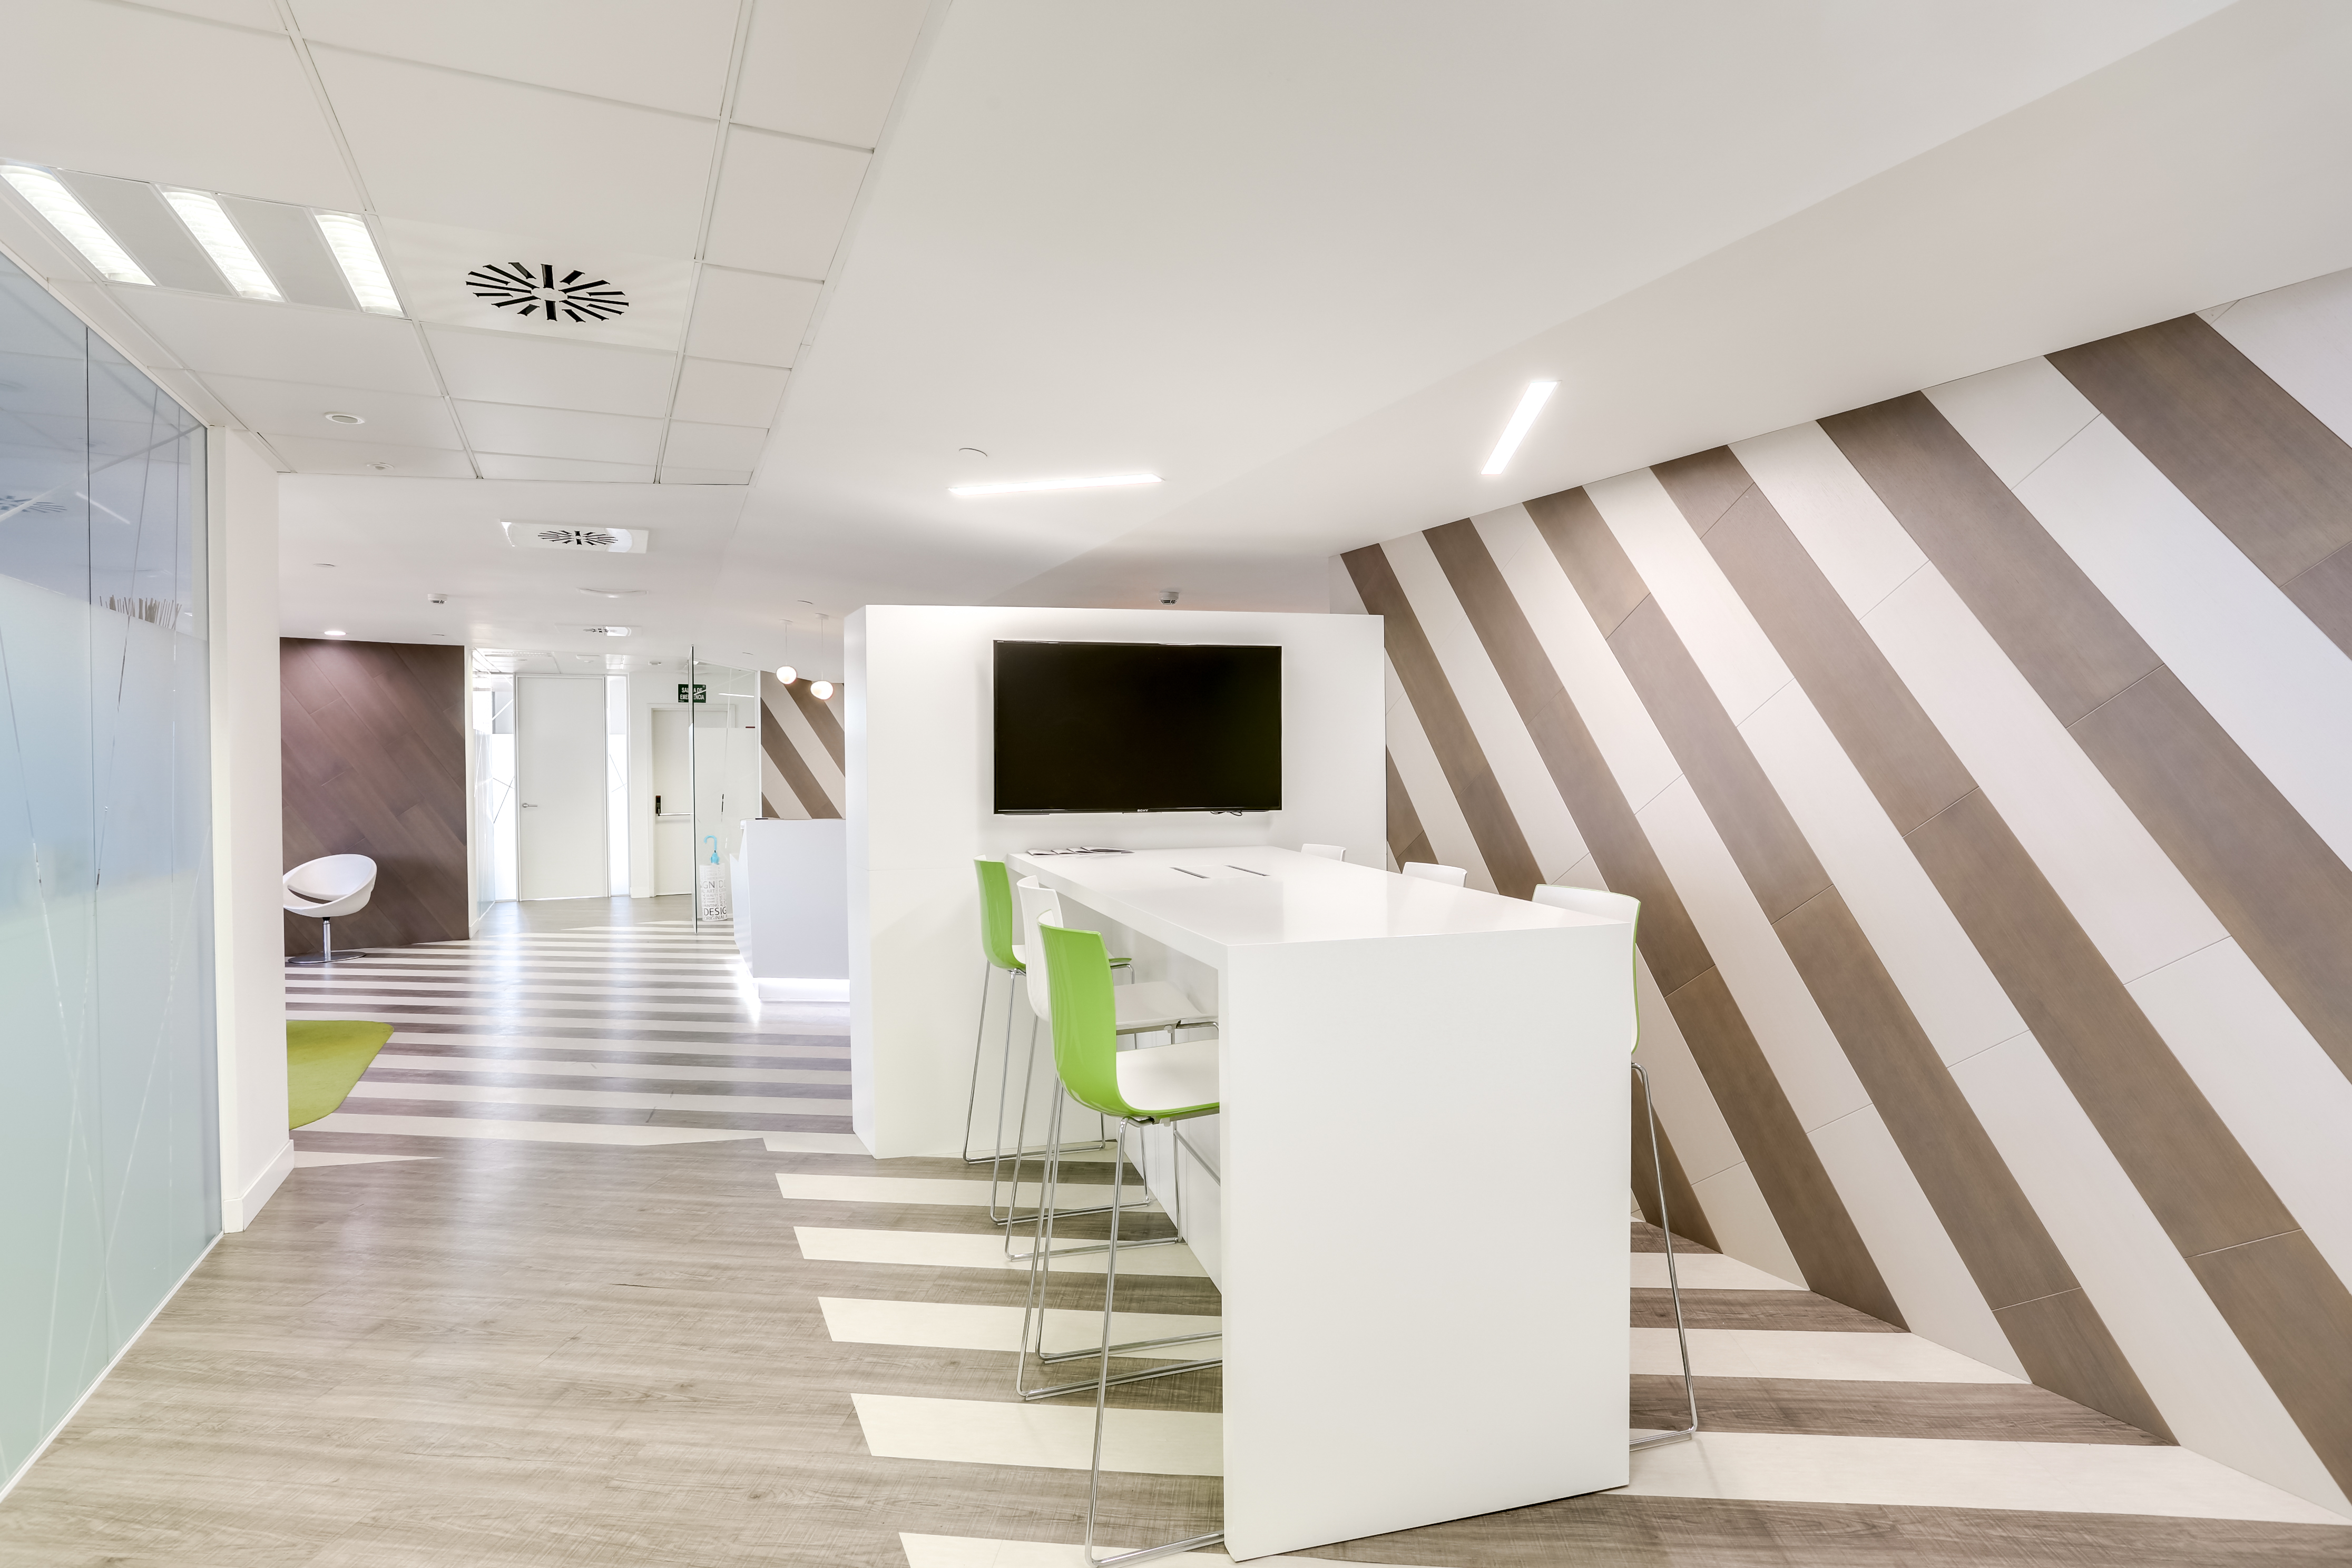 Oficina - Alquiler de espacios flexibles y coworking en Santiago Bernabéu, Madrid